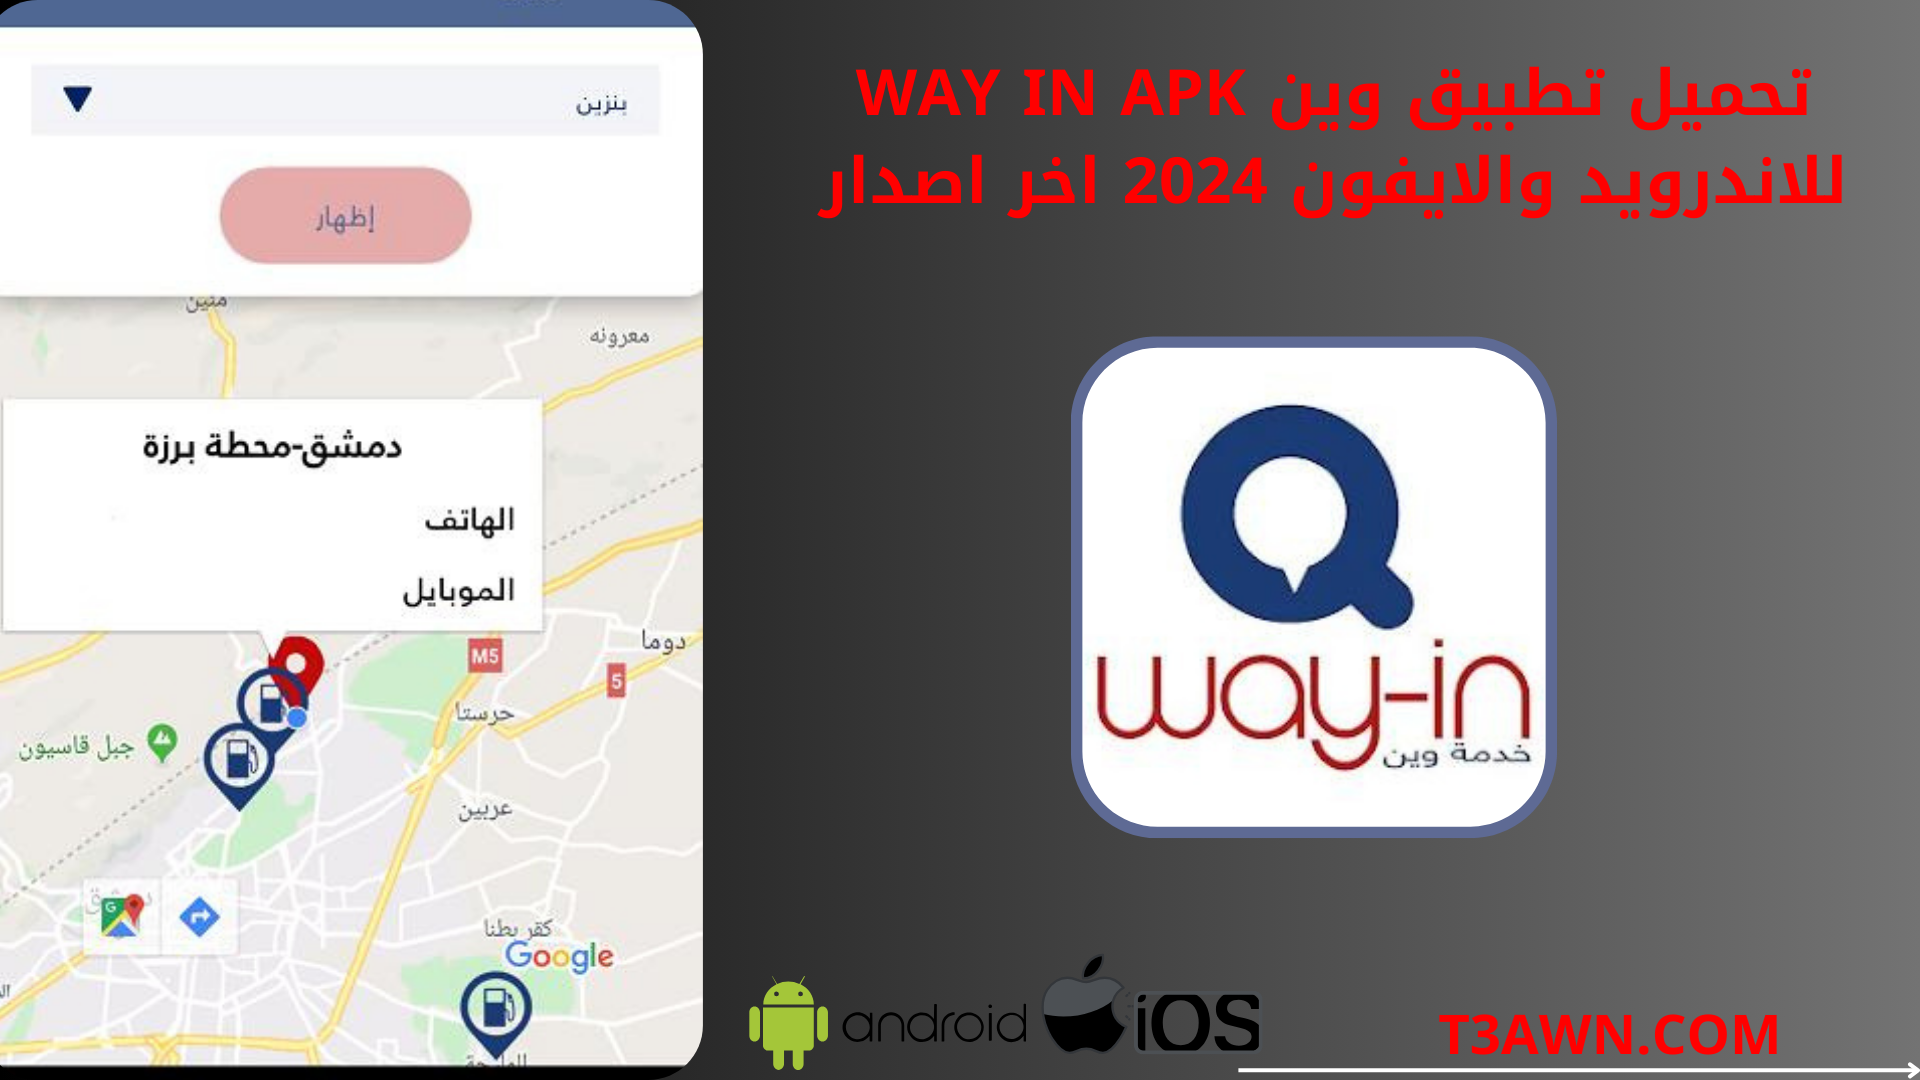 تحميل تطبيق وين way in apk للاندرويد والايفون 2024 اخر اصدار